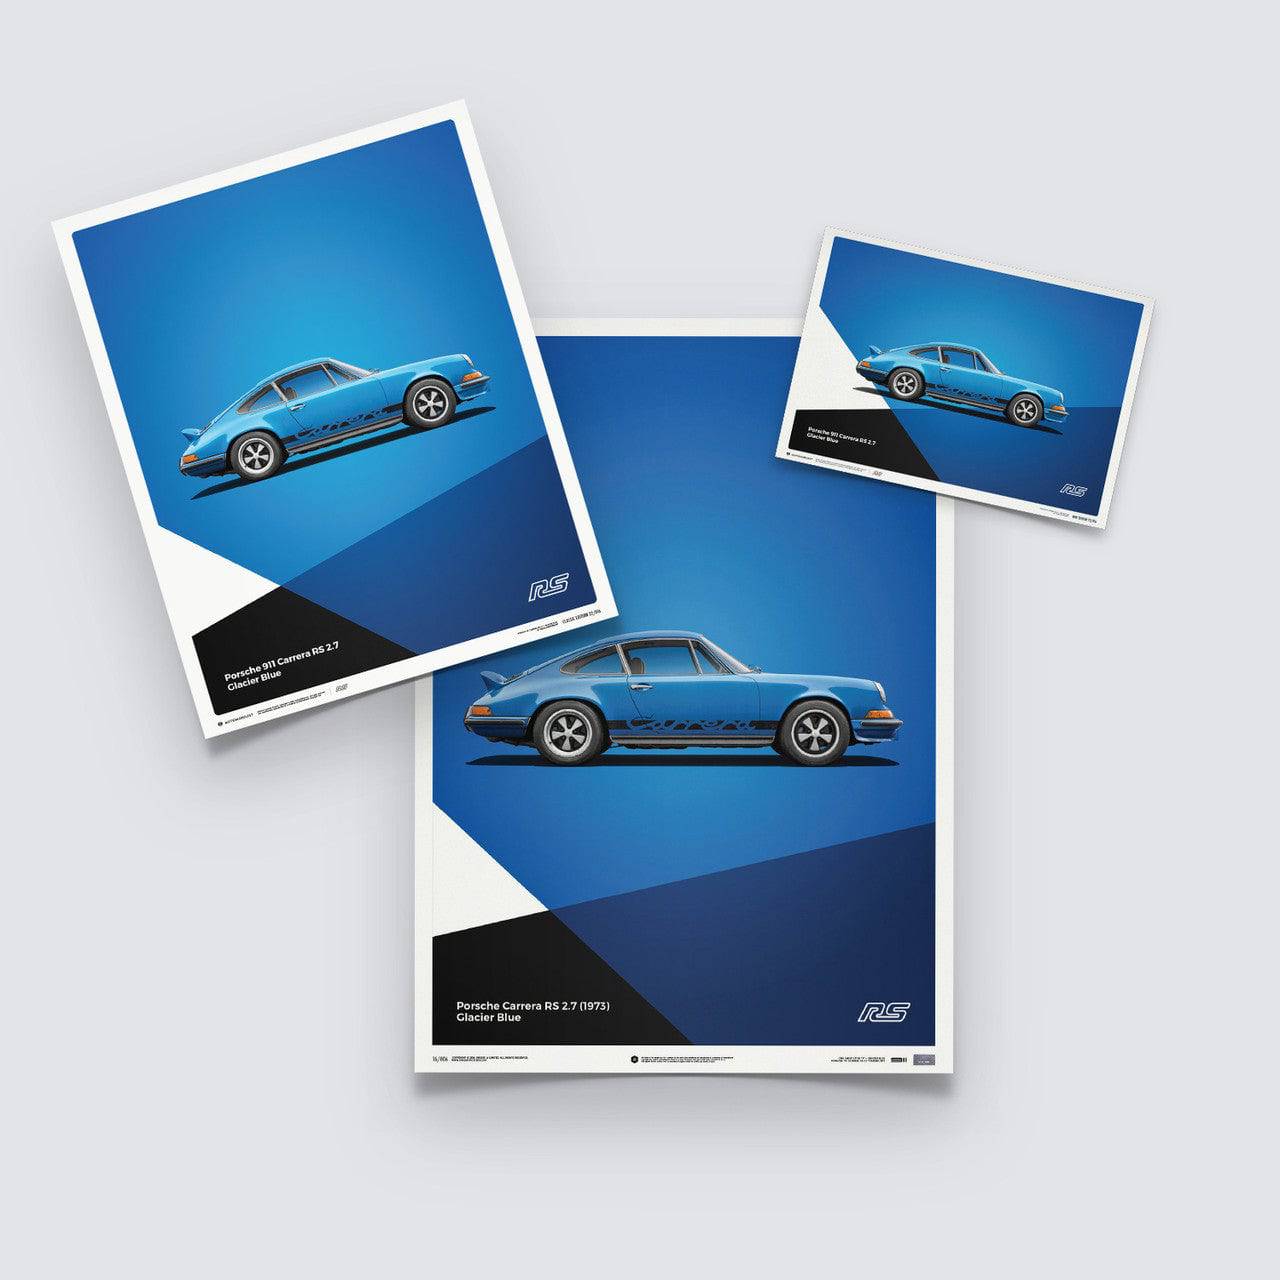 Porsche 911 RS – Blue – Poster